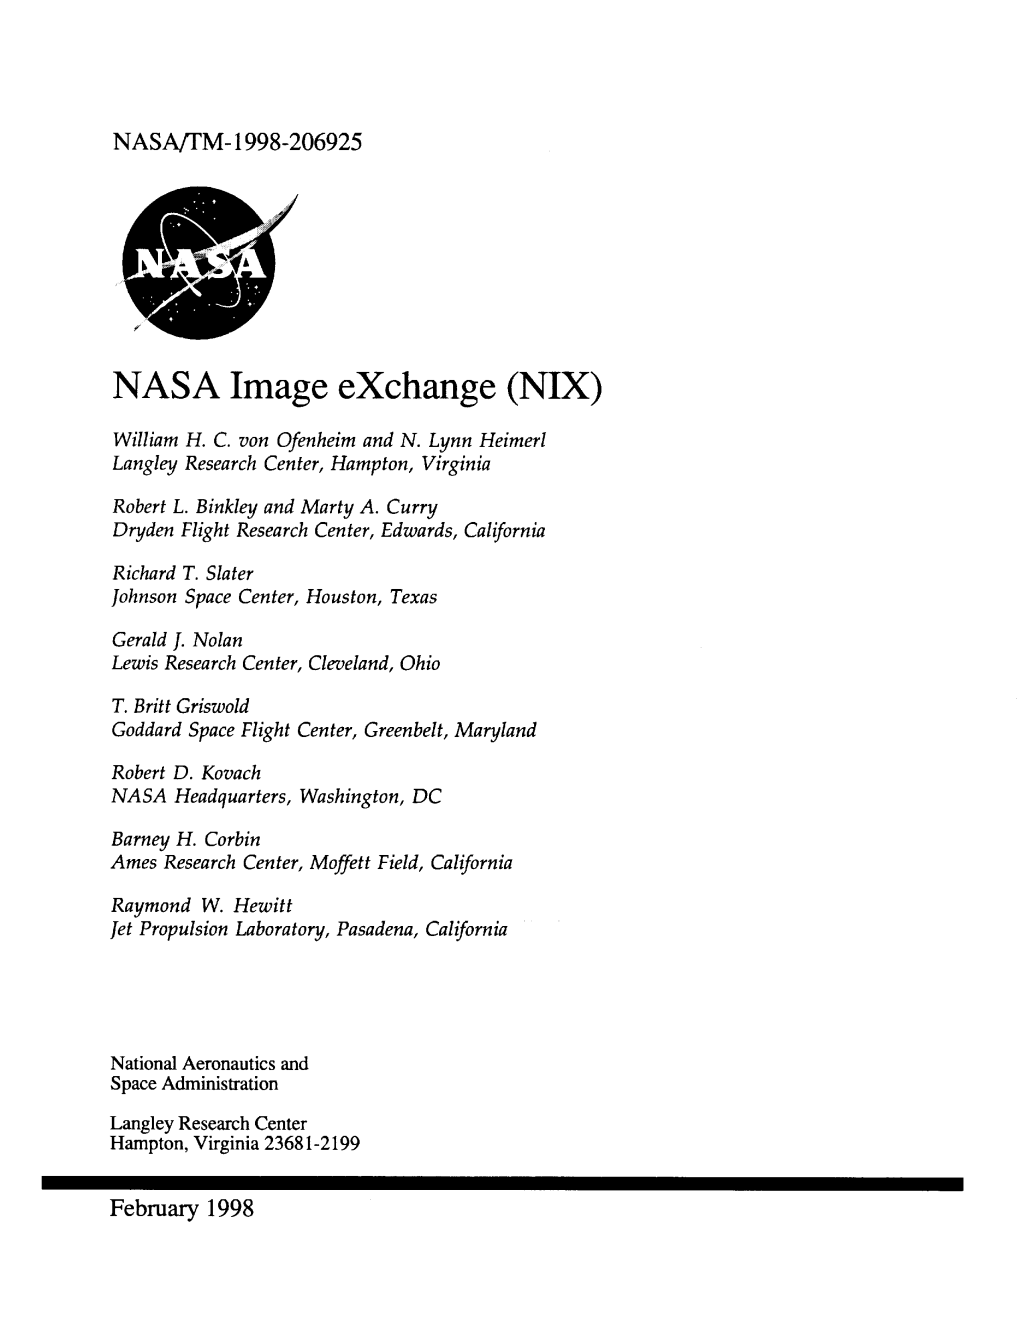 NASA Image Exchange (NIX)